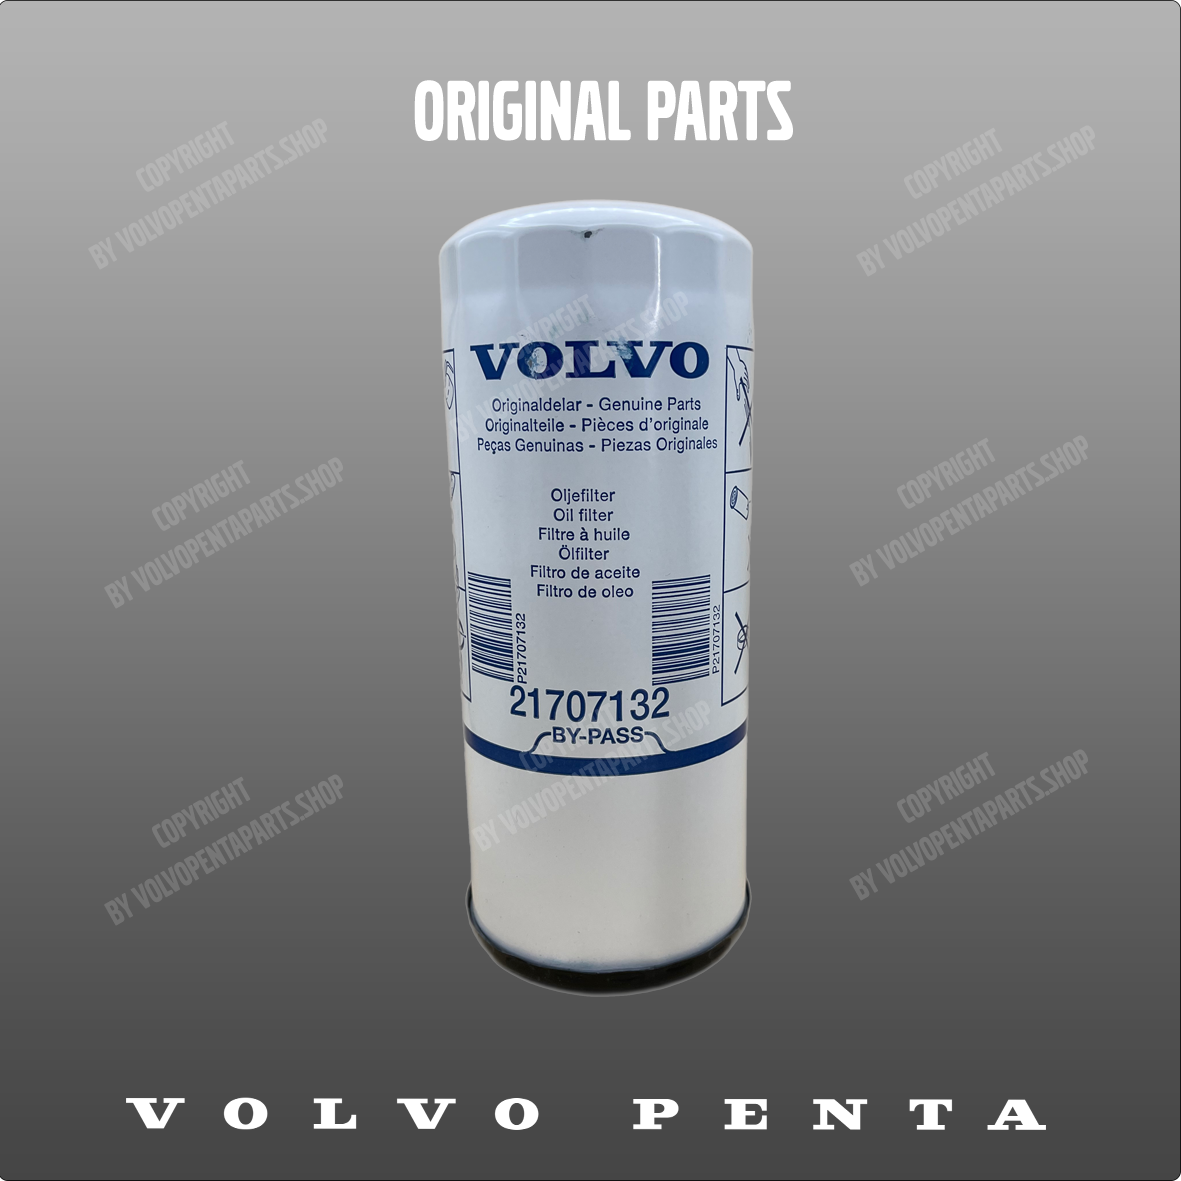 Volvo Penta oil filter 21707132